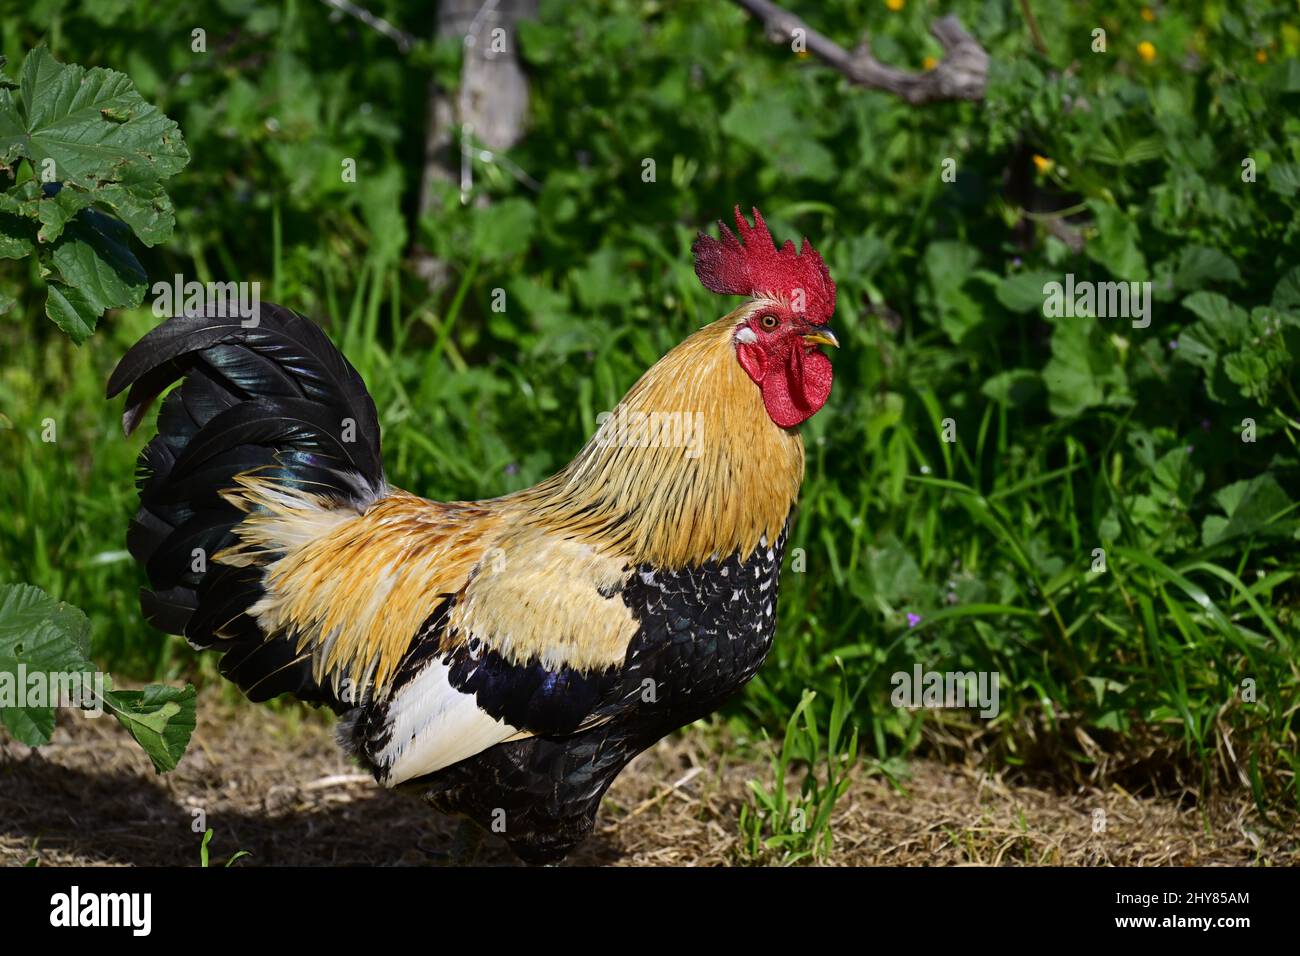 Nahaufnahme eines schönen Hahns, der im Garten bei hellem Sonnenlicht steht Stockfoto